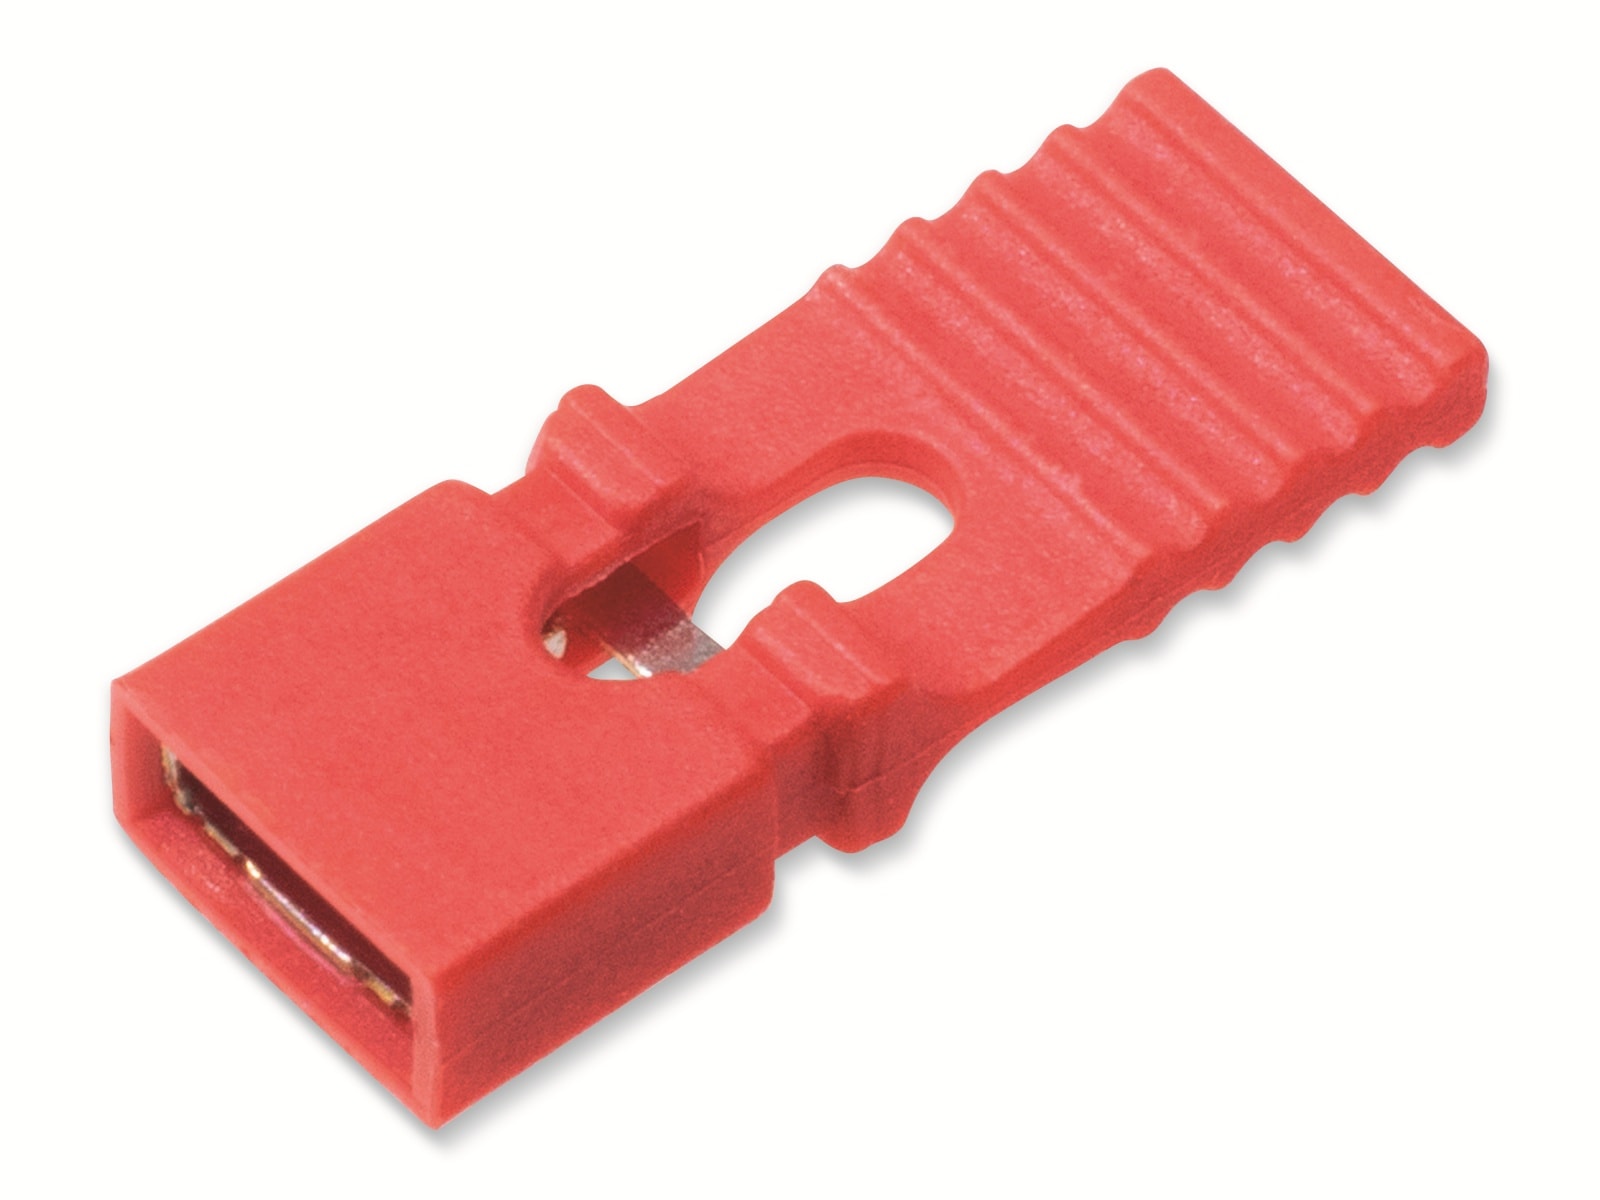 Kurzschlussbrücke / Jumper, rot, 2,54 mm, mit Grifflasche, 2 Pol